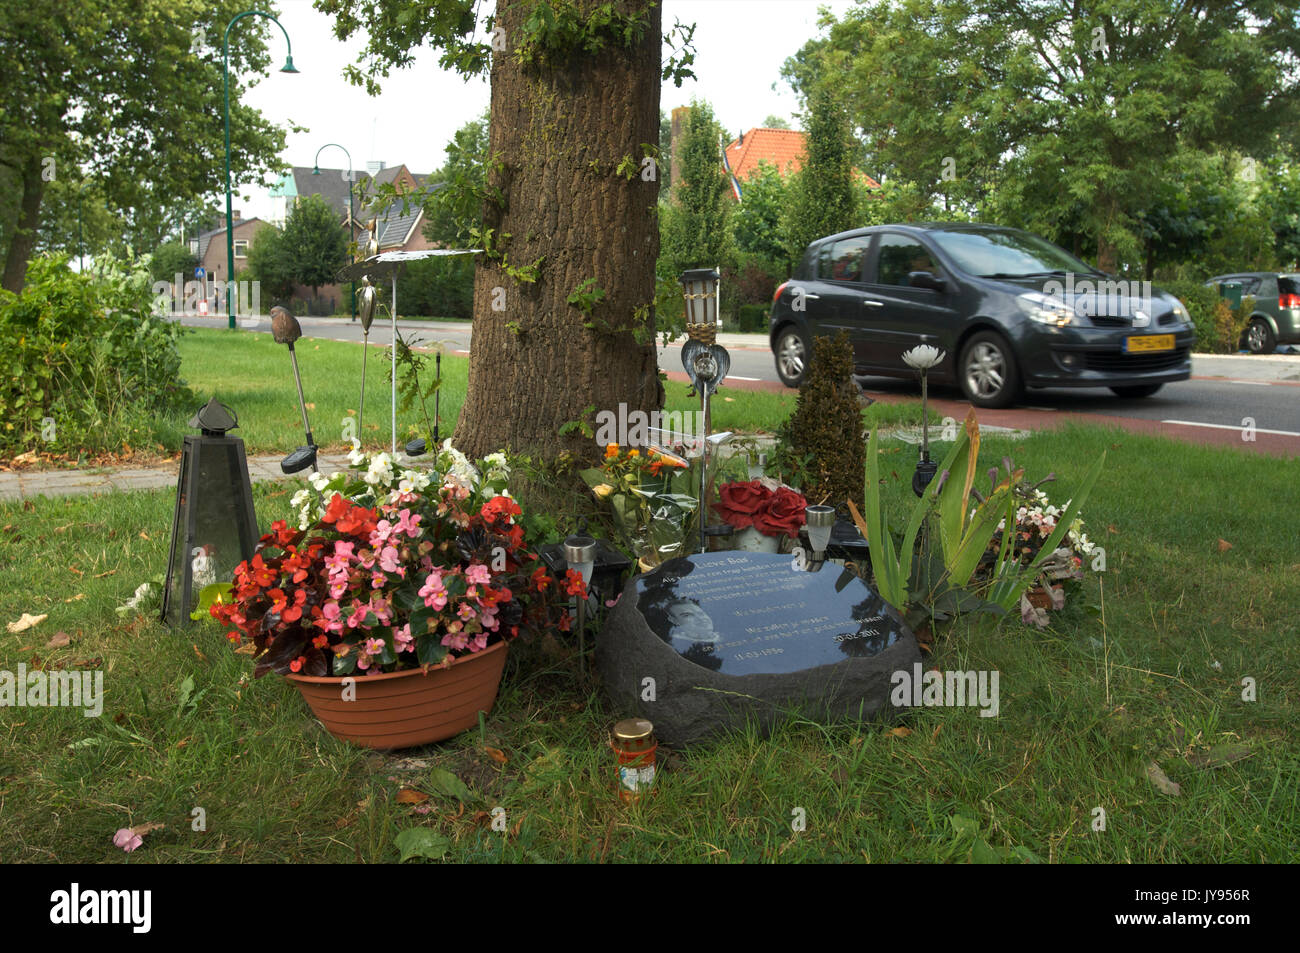 Un monumento al lado de la carretera en memoria de una persona que murió en un accidente de automóvil, en los países bajos Foto de stock